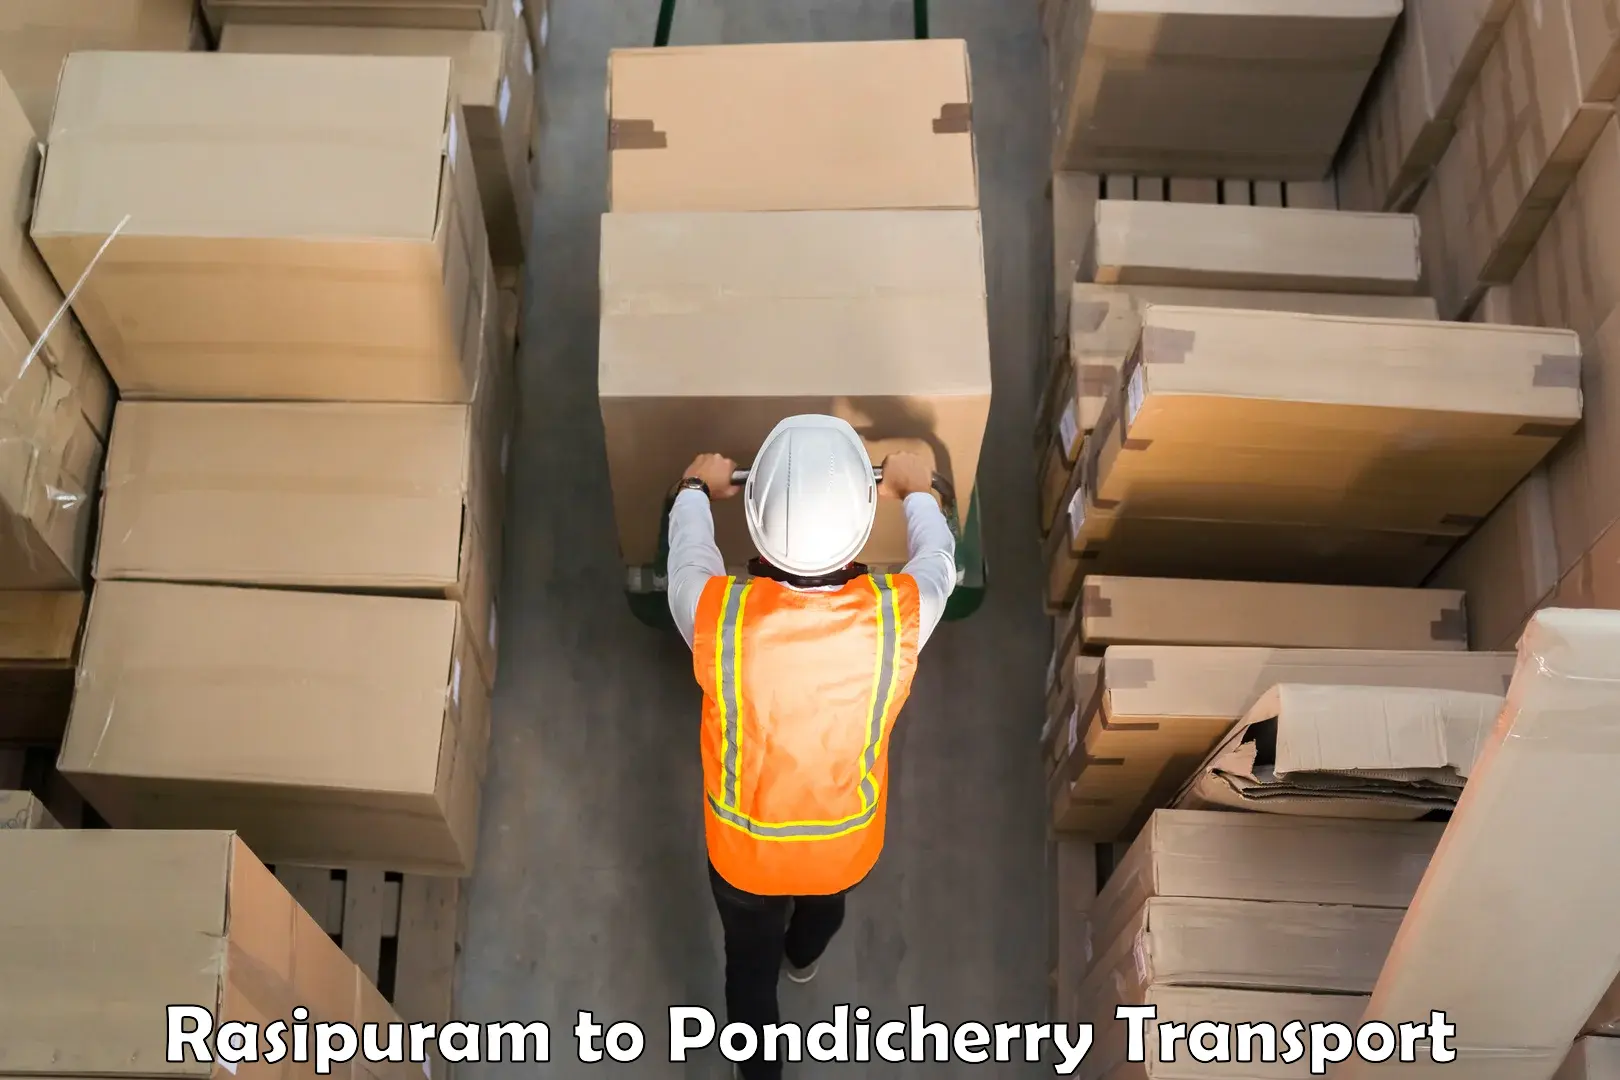 International cargo transportation services Rasipuram to Pondicherry